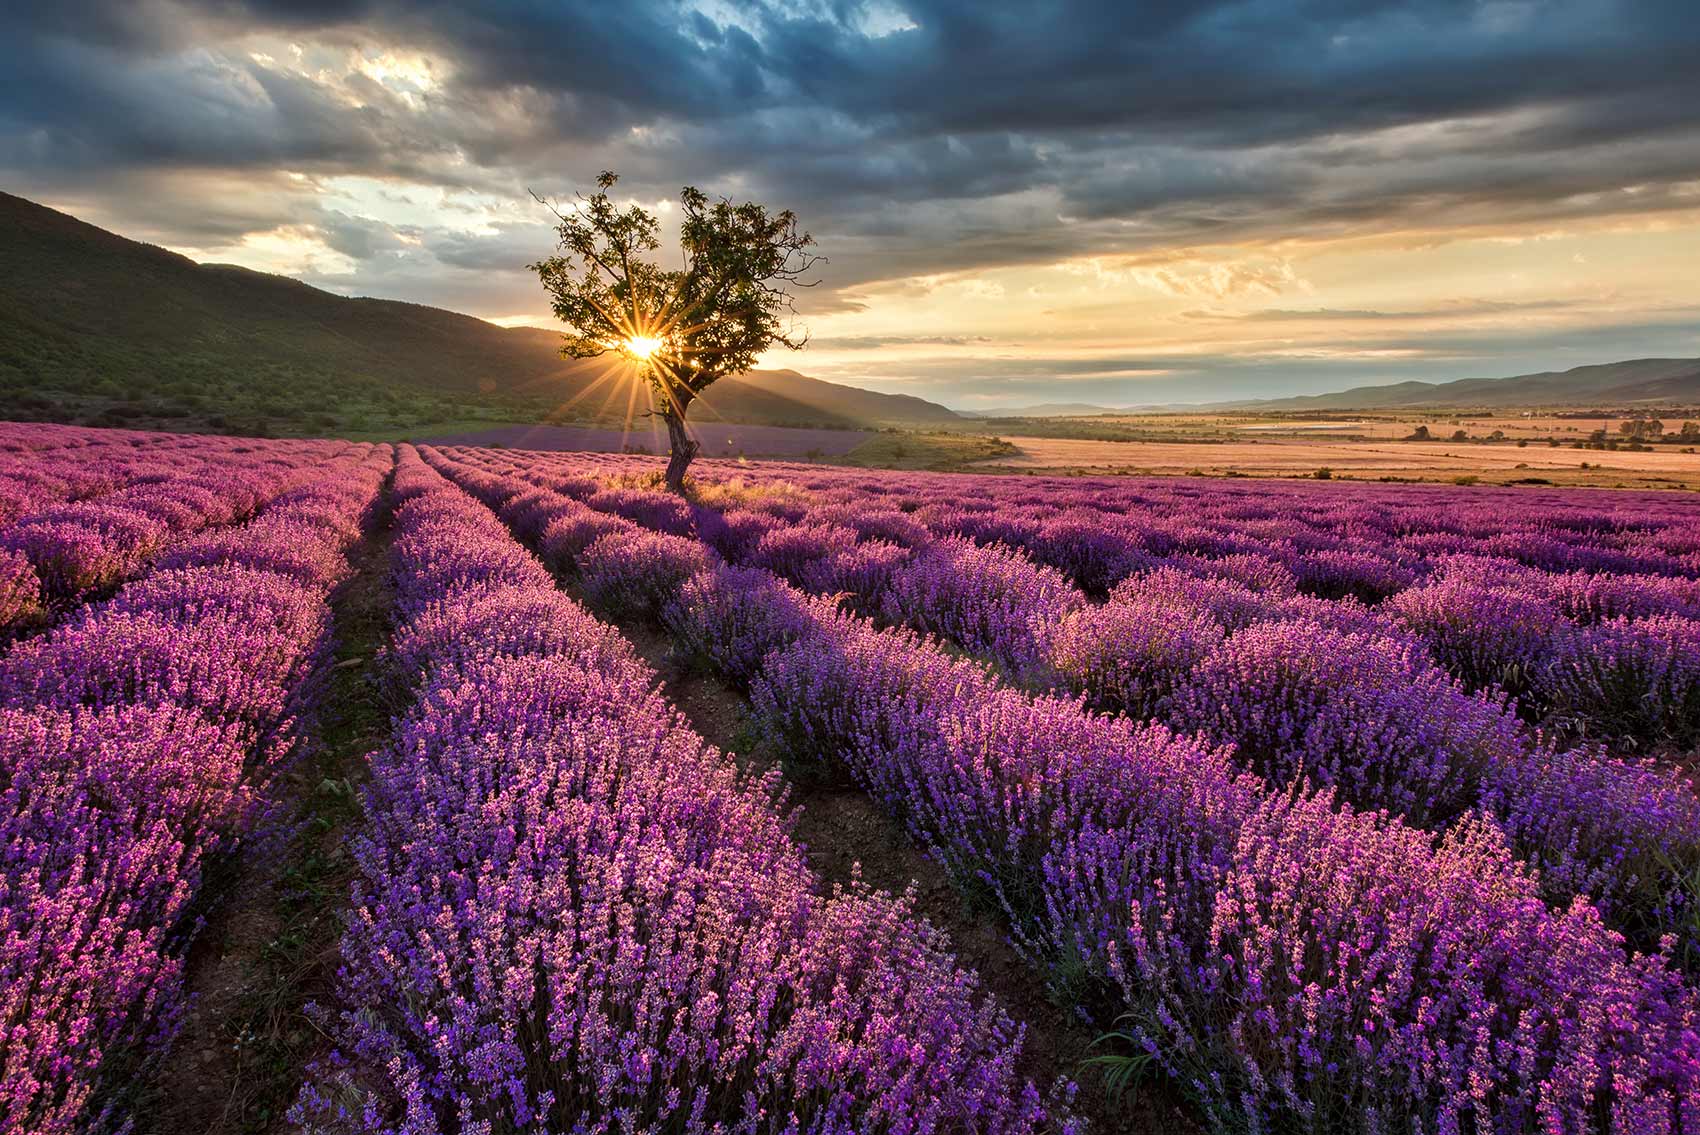 Abendstimmung im Lavendelfeld - Urlaub in der Provence erleben